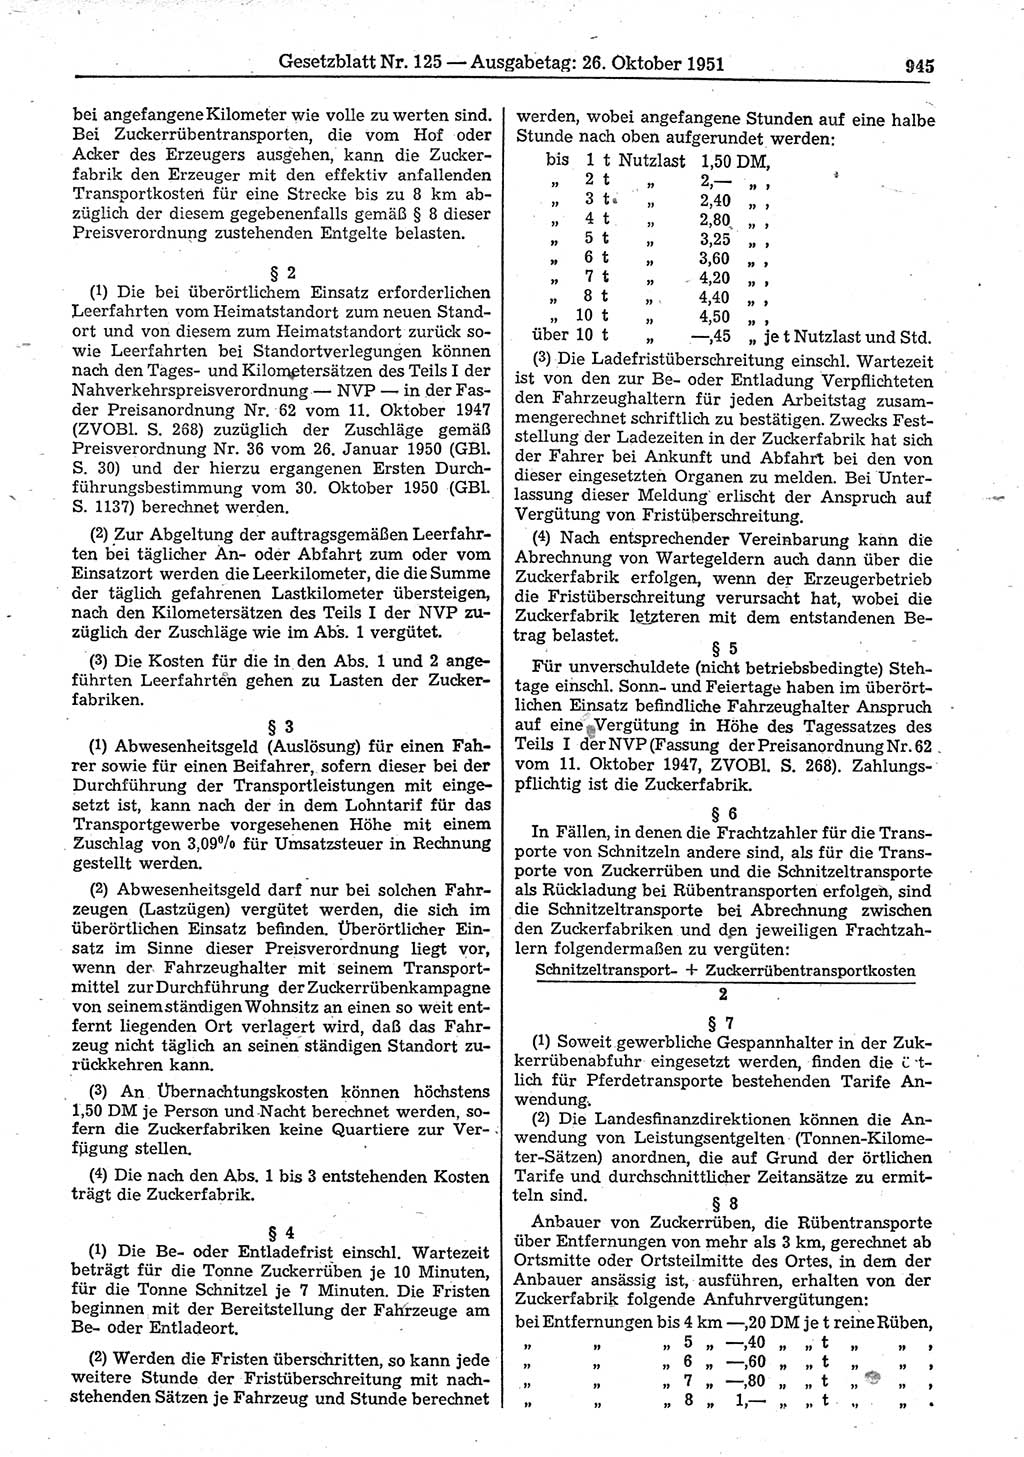 Gesetzblatt (GBl.) der Deutschen Demokratischen Republik (DDR) 1951, Seite 945 (GBl. DDR 1951, S. 945)